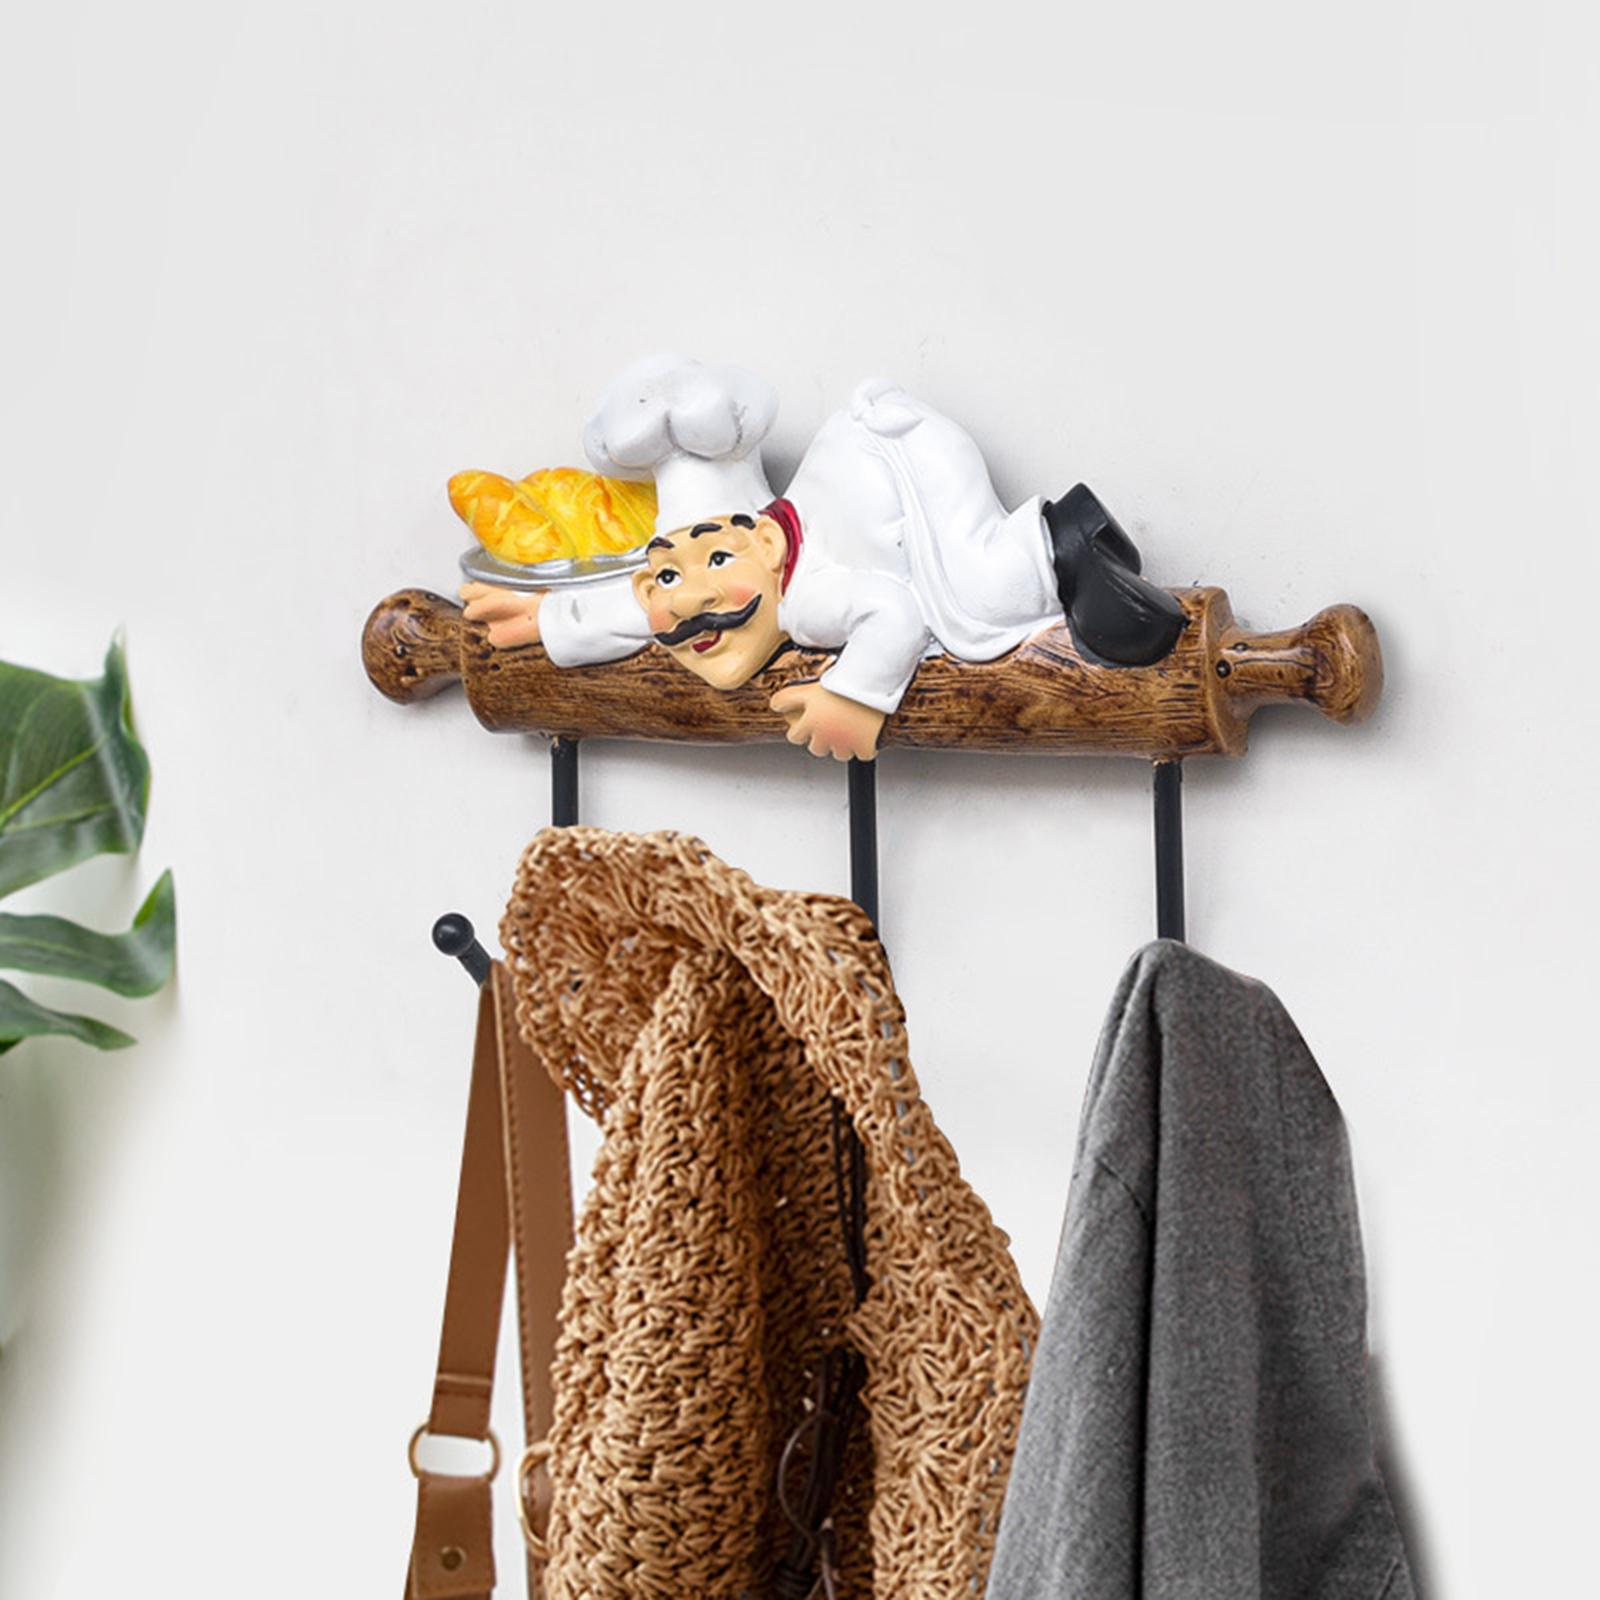 Chef Wall Hook Cabinet Decor Kitchen Hooks coat Rack for Towel Keys Bag